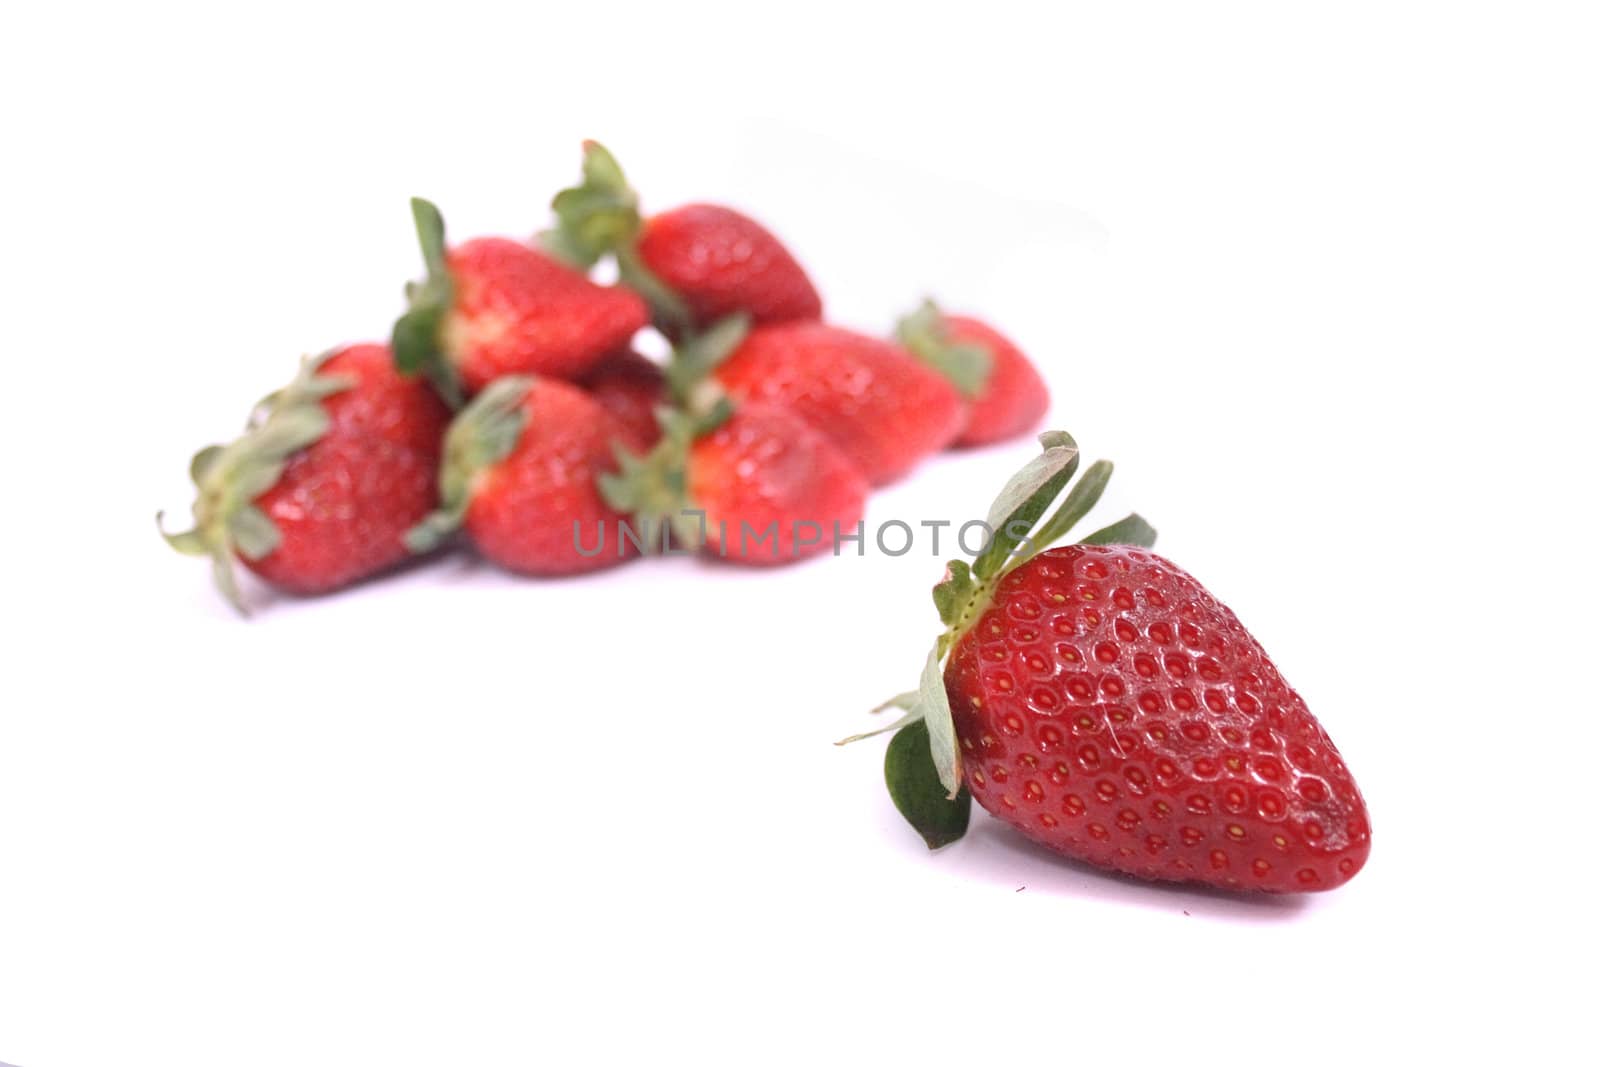 strawberries by jonnysek